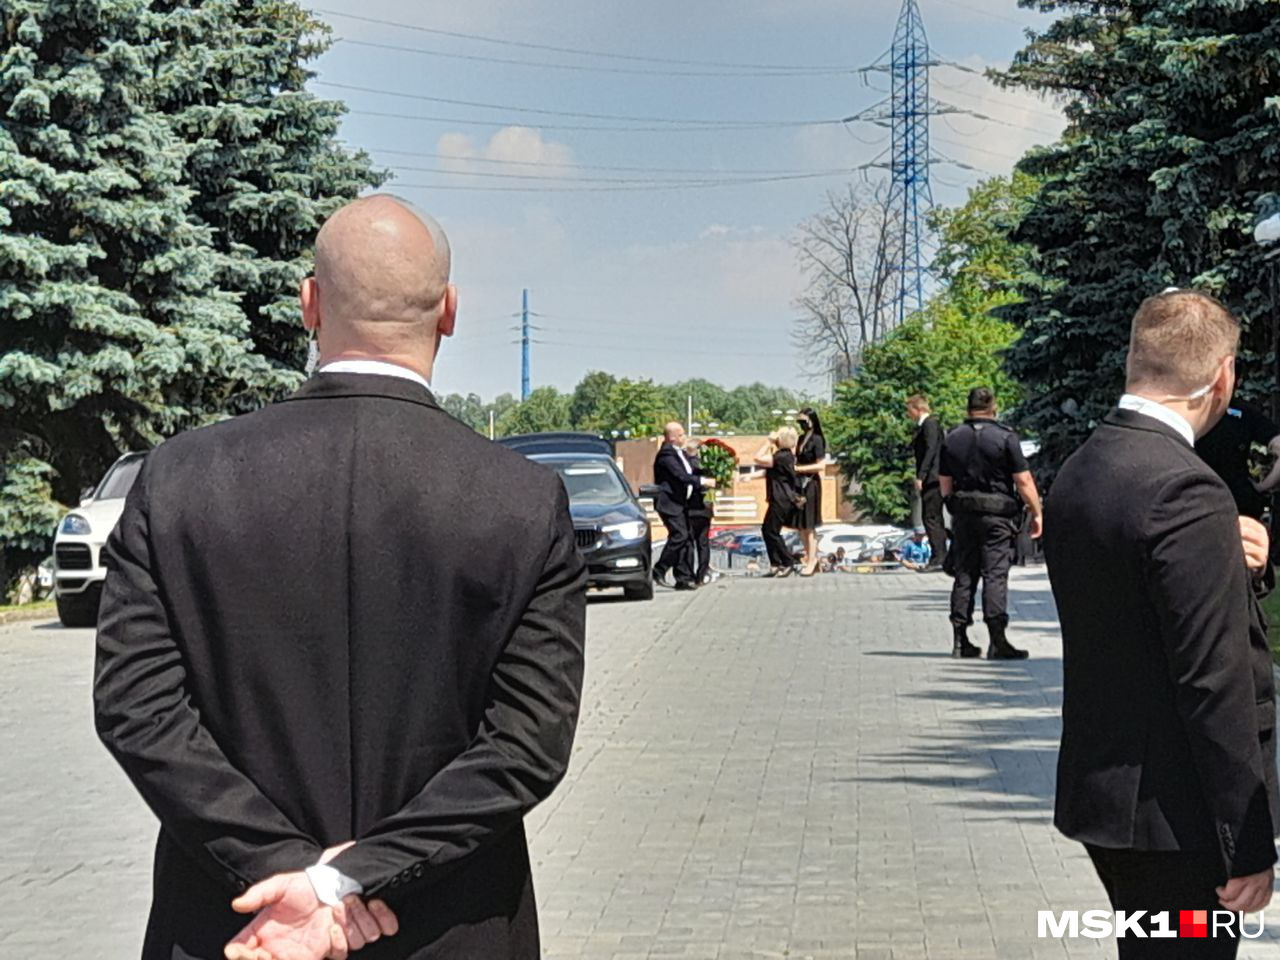 На кладбище съехались знаменитости — например, Игорь Крутой (на фото выходит с букетом из машины)